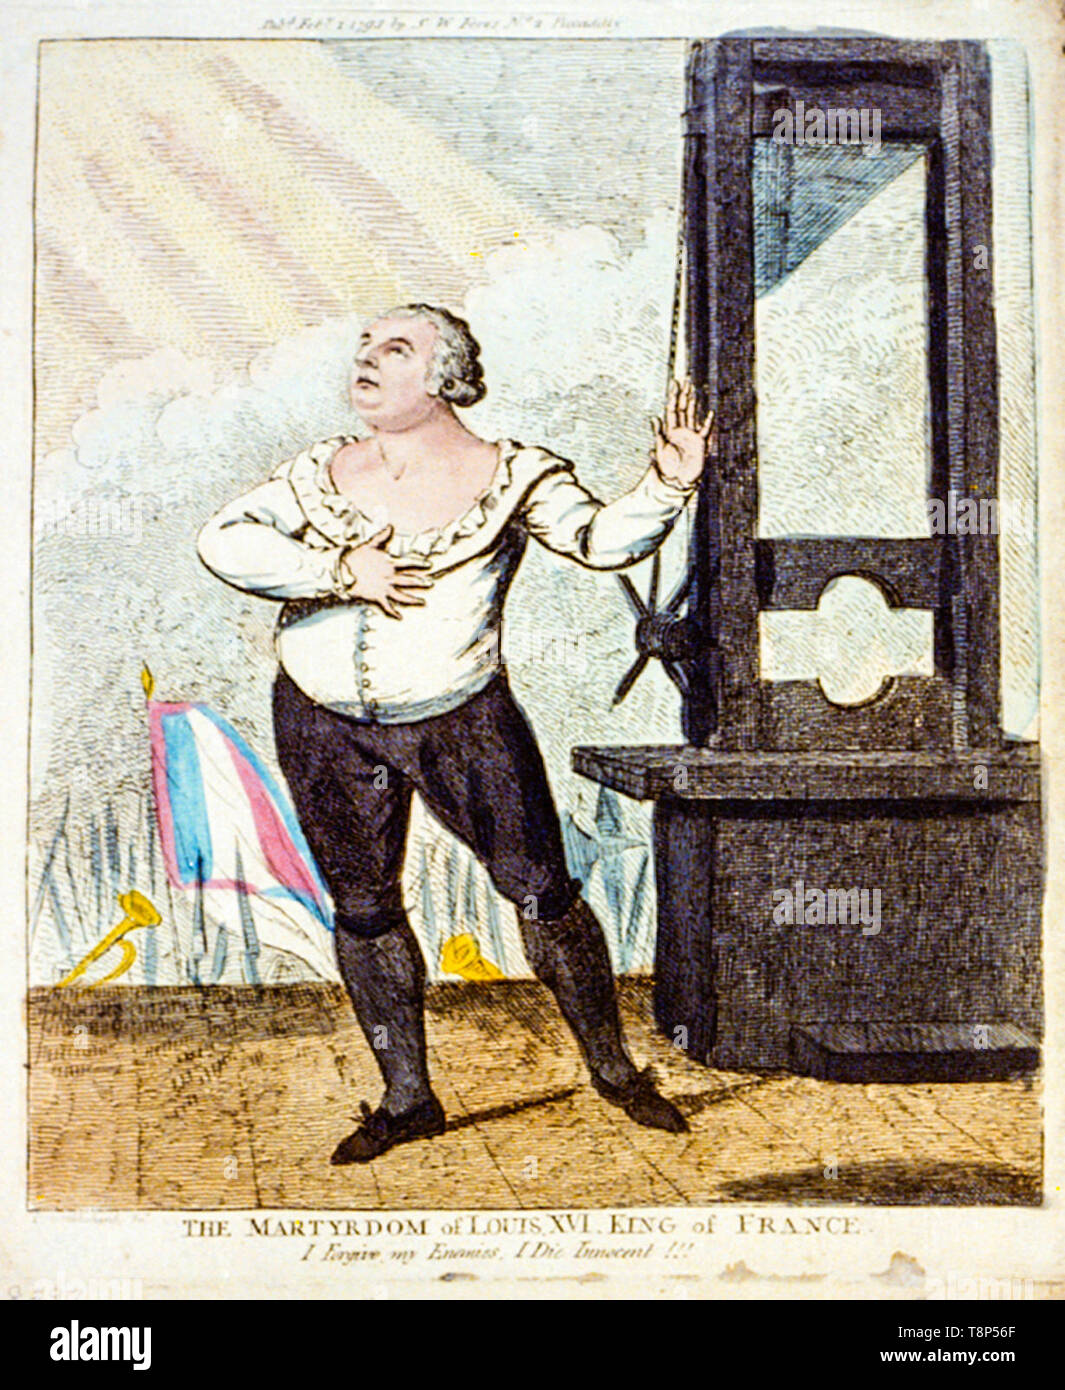 Louis XVI den Tod vor, stehend, mit dramatischer darstellen, neben einer Guillotine, handkolorierte Radierung, Gravur, Isaac Cruikshank, 1793 Stockfoto